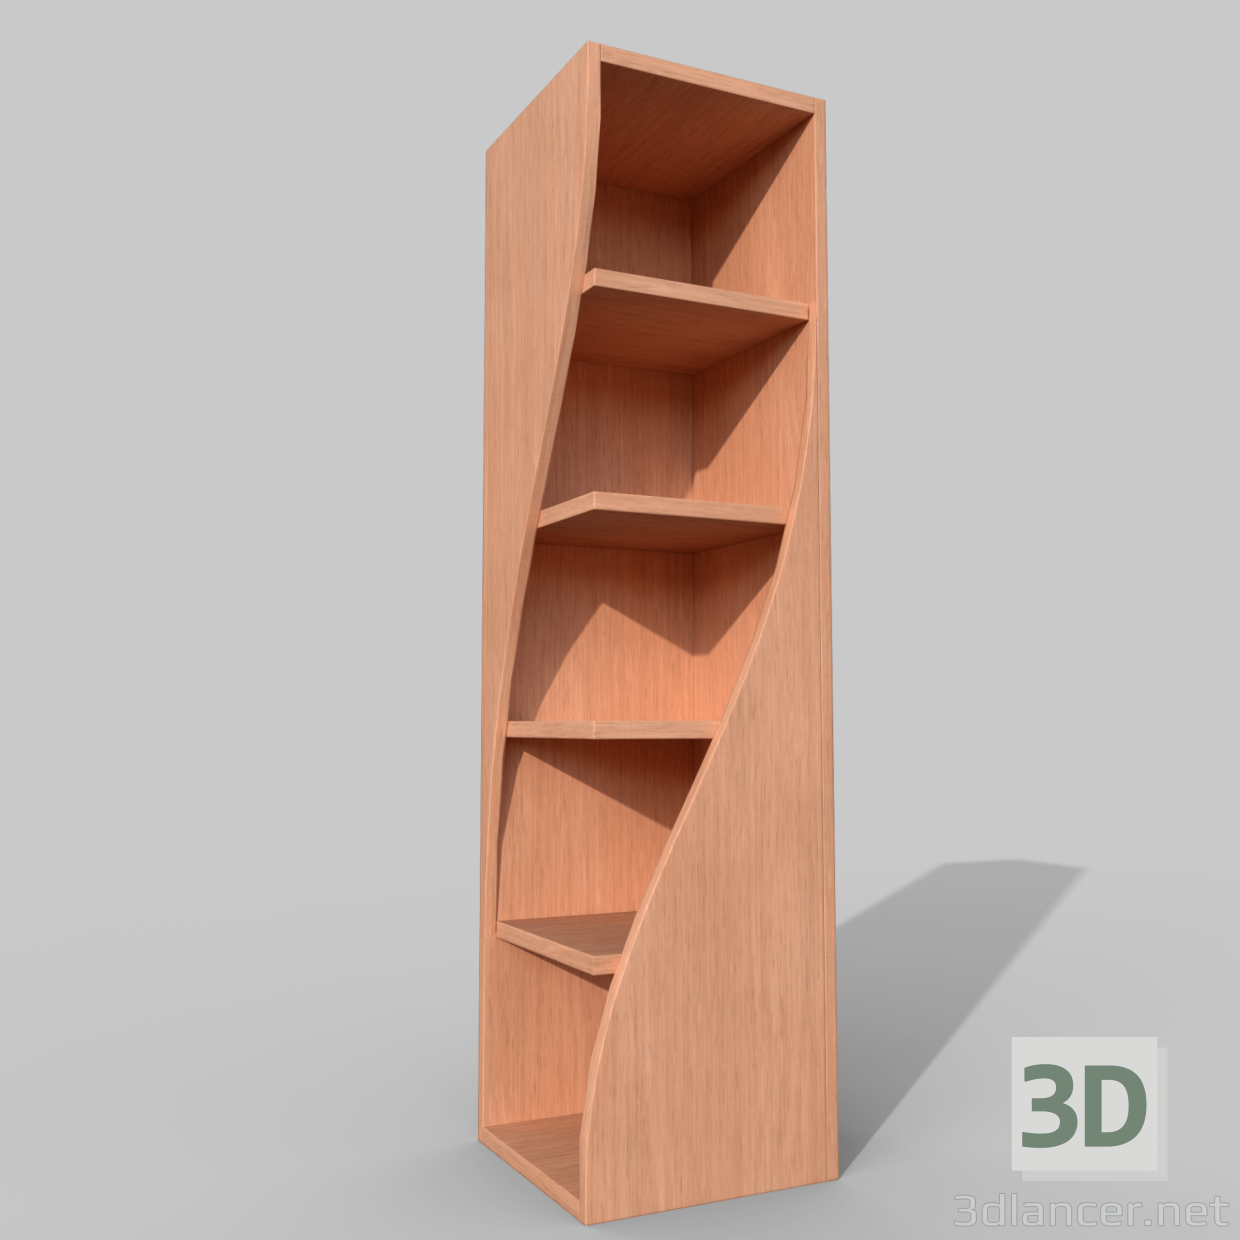 3D yuvarlak kitaplık modeli satın - render